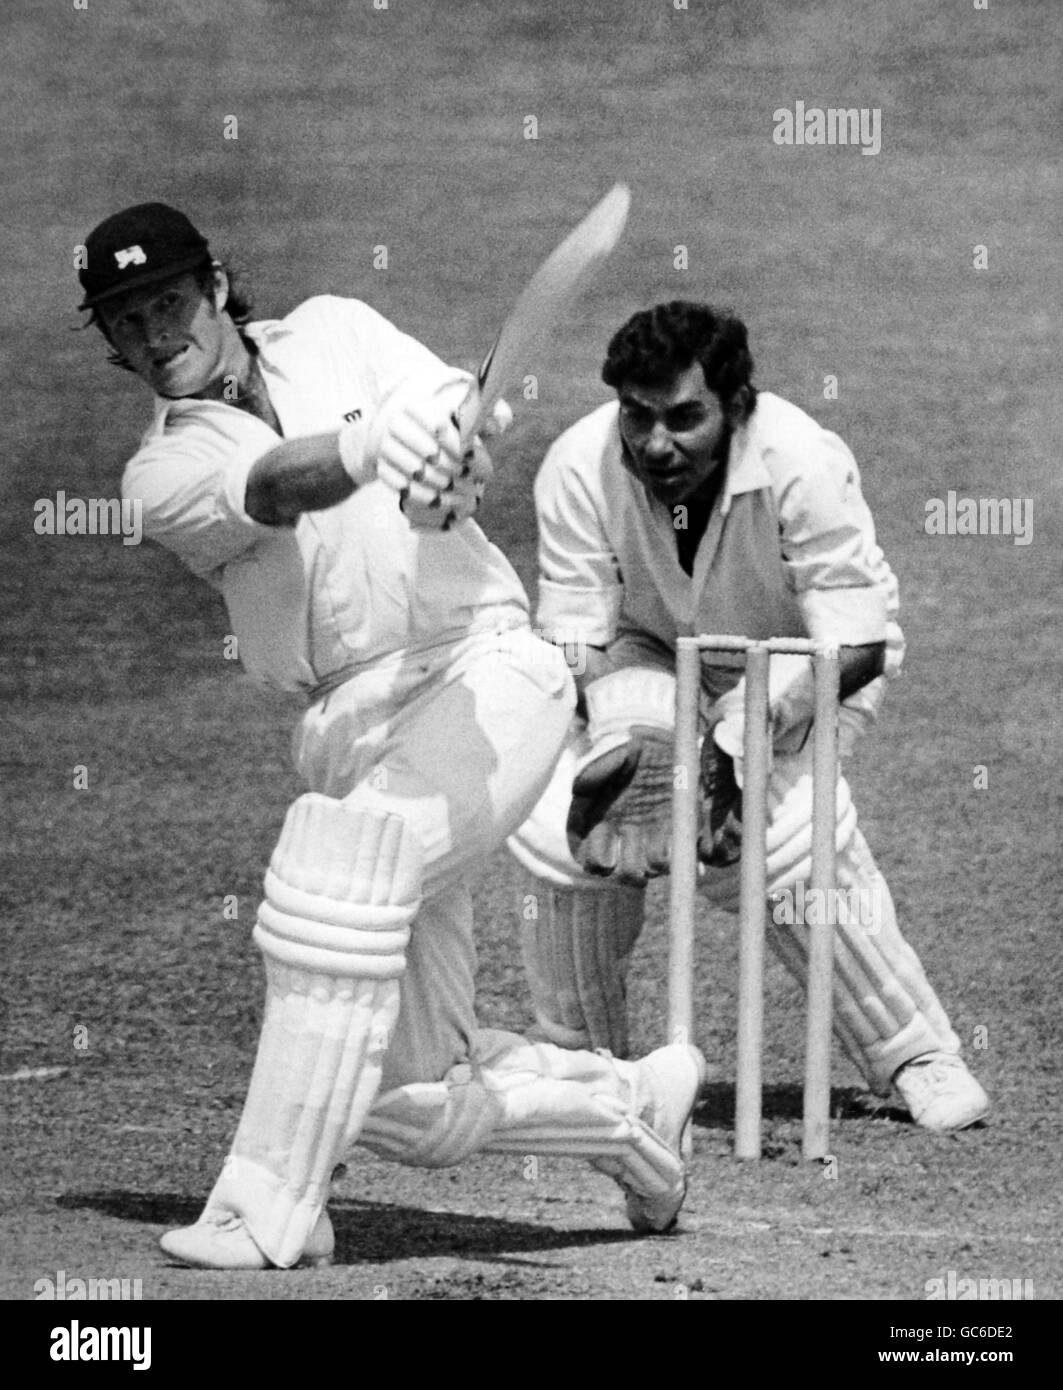 Cricket - Coppa del mondo Prudential 1975 (Gruppo A) - Inghilterra / India - campo da cricket Lord's. Dennis amiss distrugge la palla Foto Stock